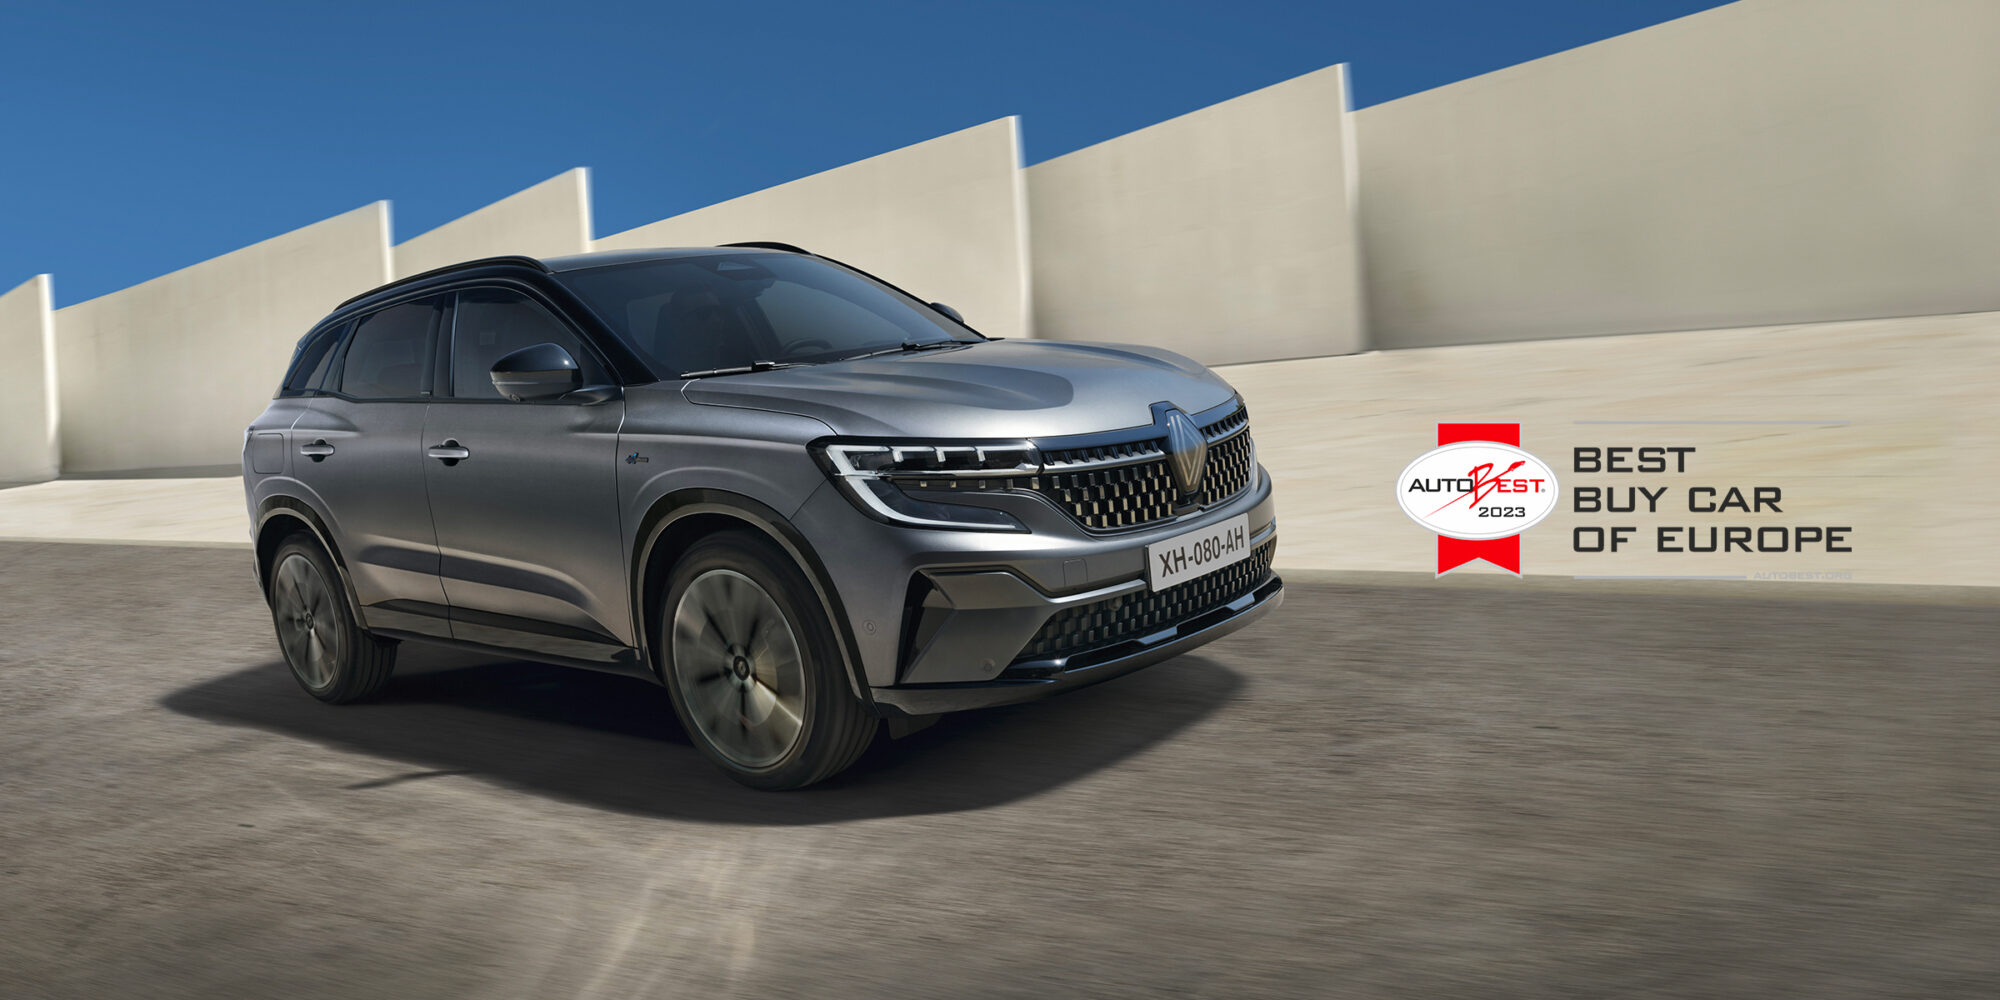 Renault_Austral_remporte_le_prix_Â_Best_Buy_Car_of_Europe_2023_Â